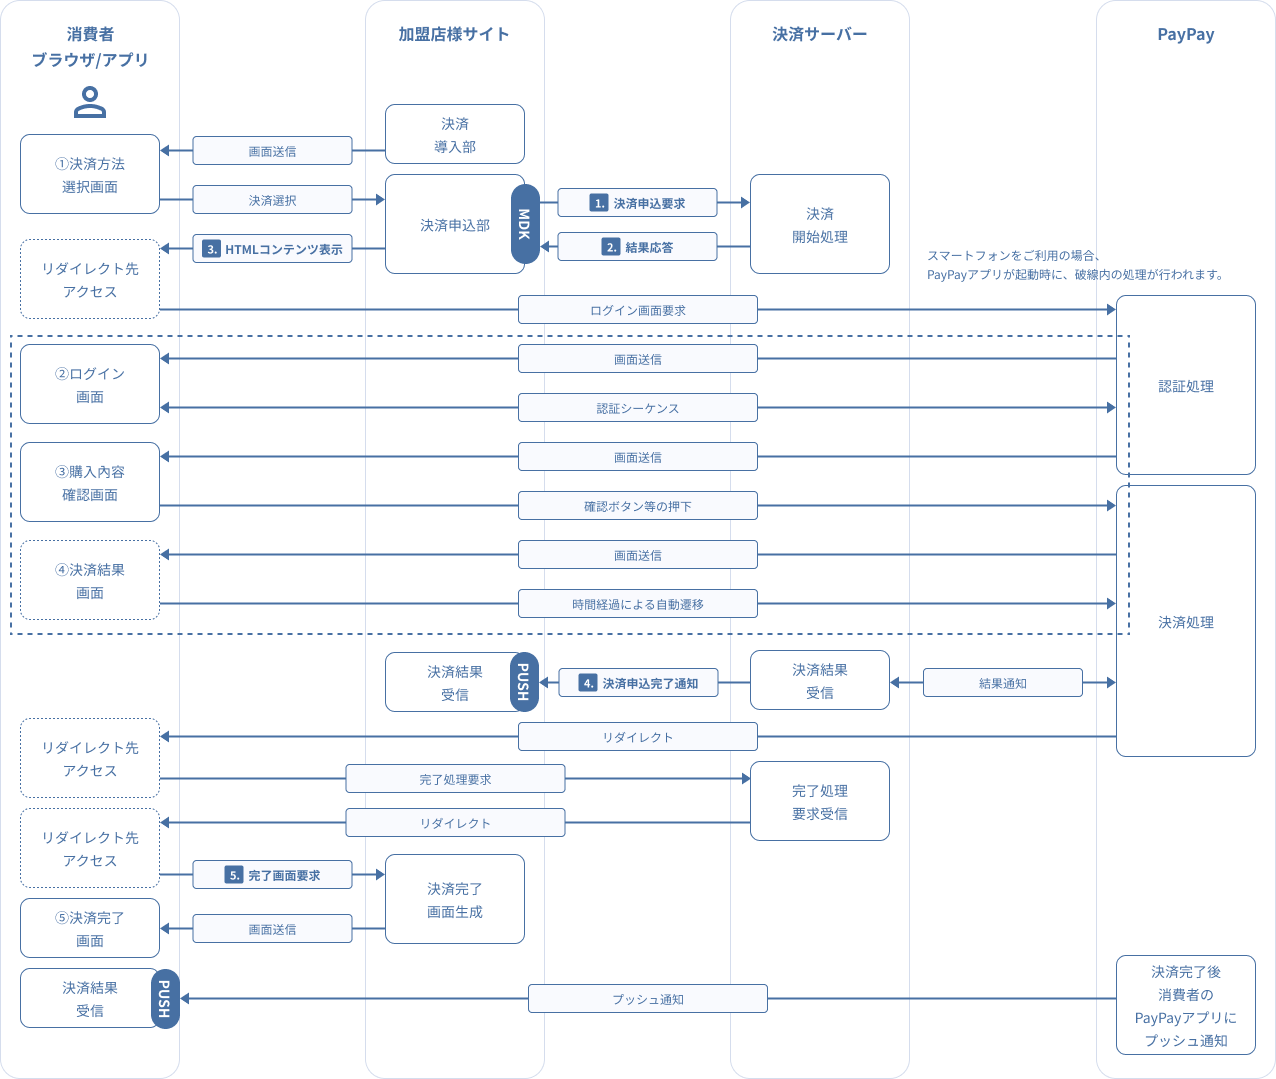 図 3-2.1 MDK利用時システム処理概要図（PC/スマートフォンによるPayPay（オンライン決済）の都度決済申込）